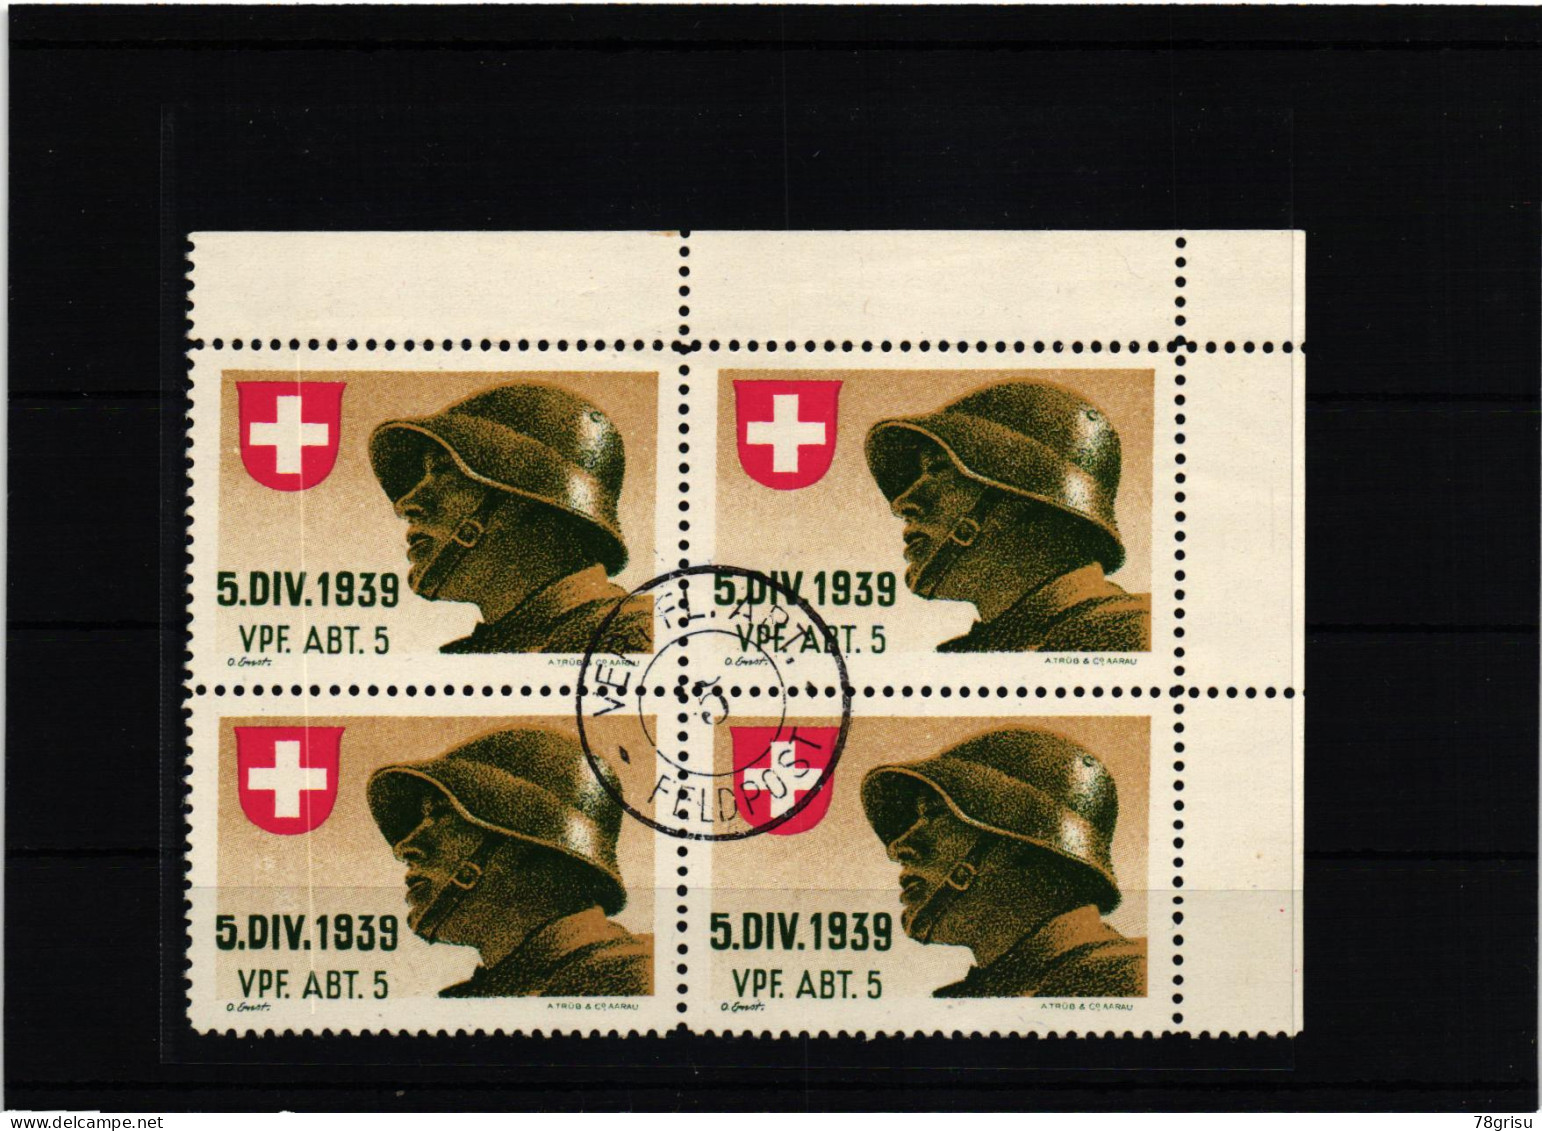 Schweiz Soldatenmarken, Vpf.Abt. Verpflegungs Abteilung 1939 Ges. - Labels